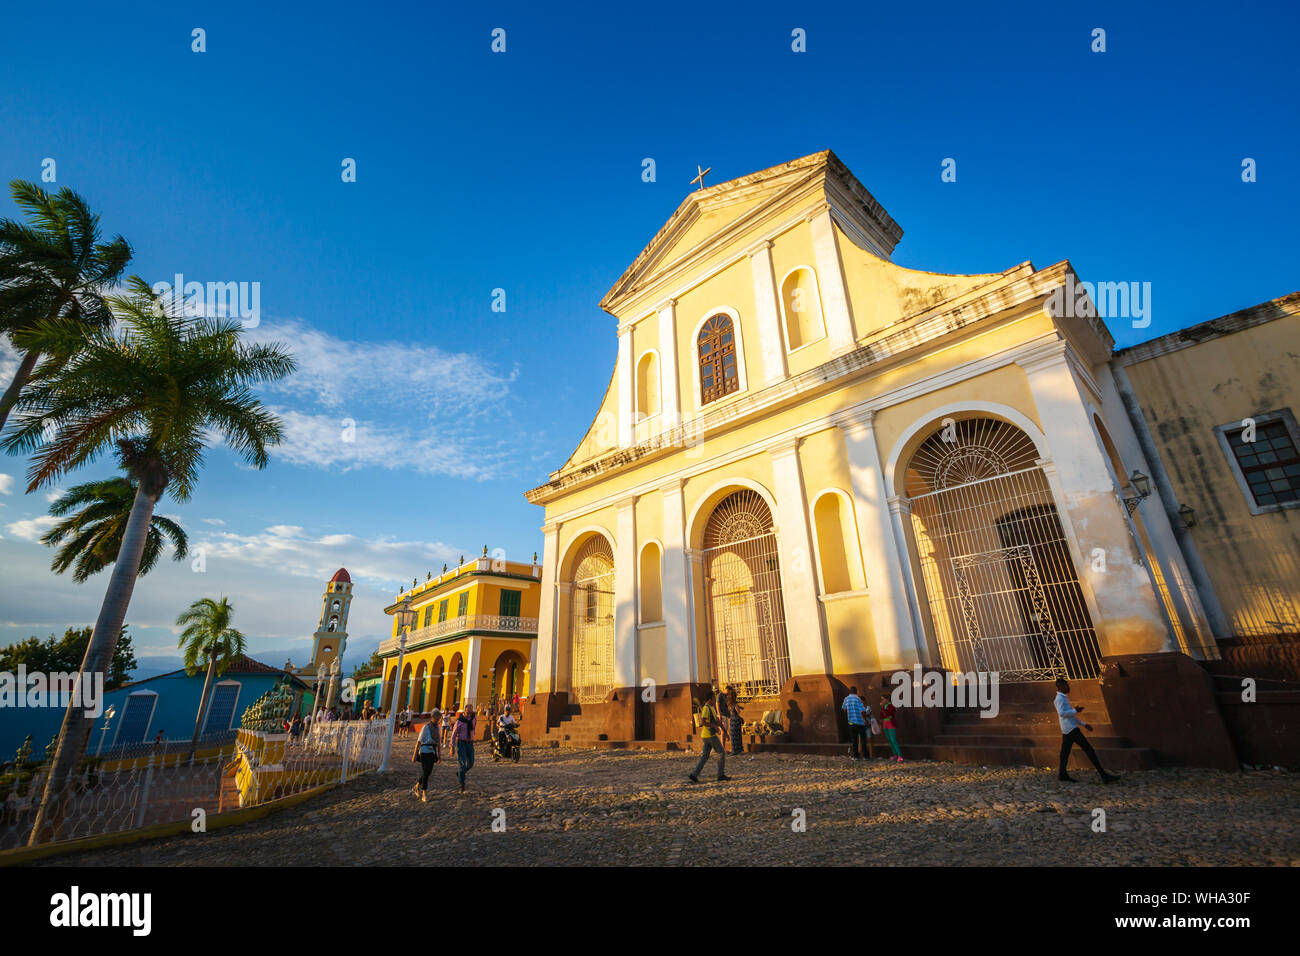 La Chiesa della Santissima Trinità in Plaza Major in Trinidad, Sito Patrimonio Mondiale dell'UNESCO,Trinidad, Cuba, West Indies, dei Caraibi e America centrale Foto Stock